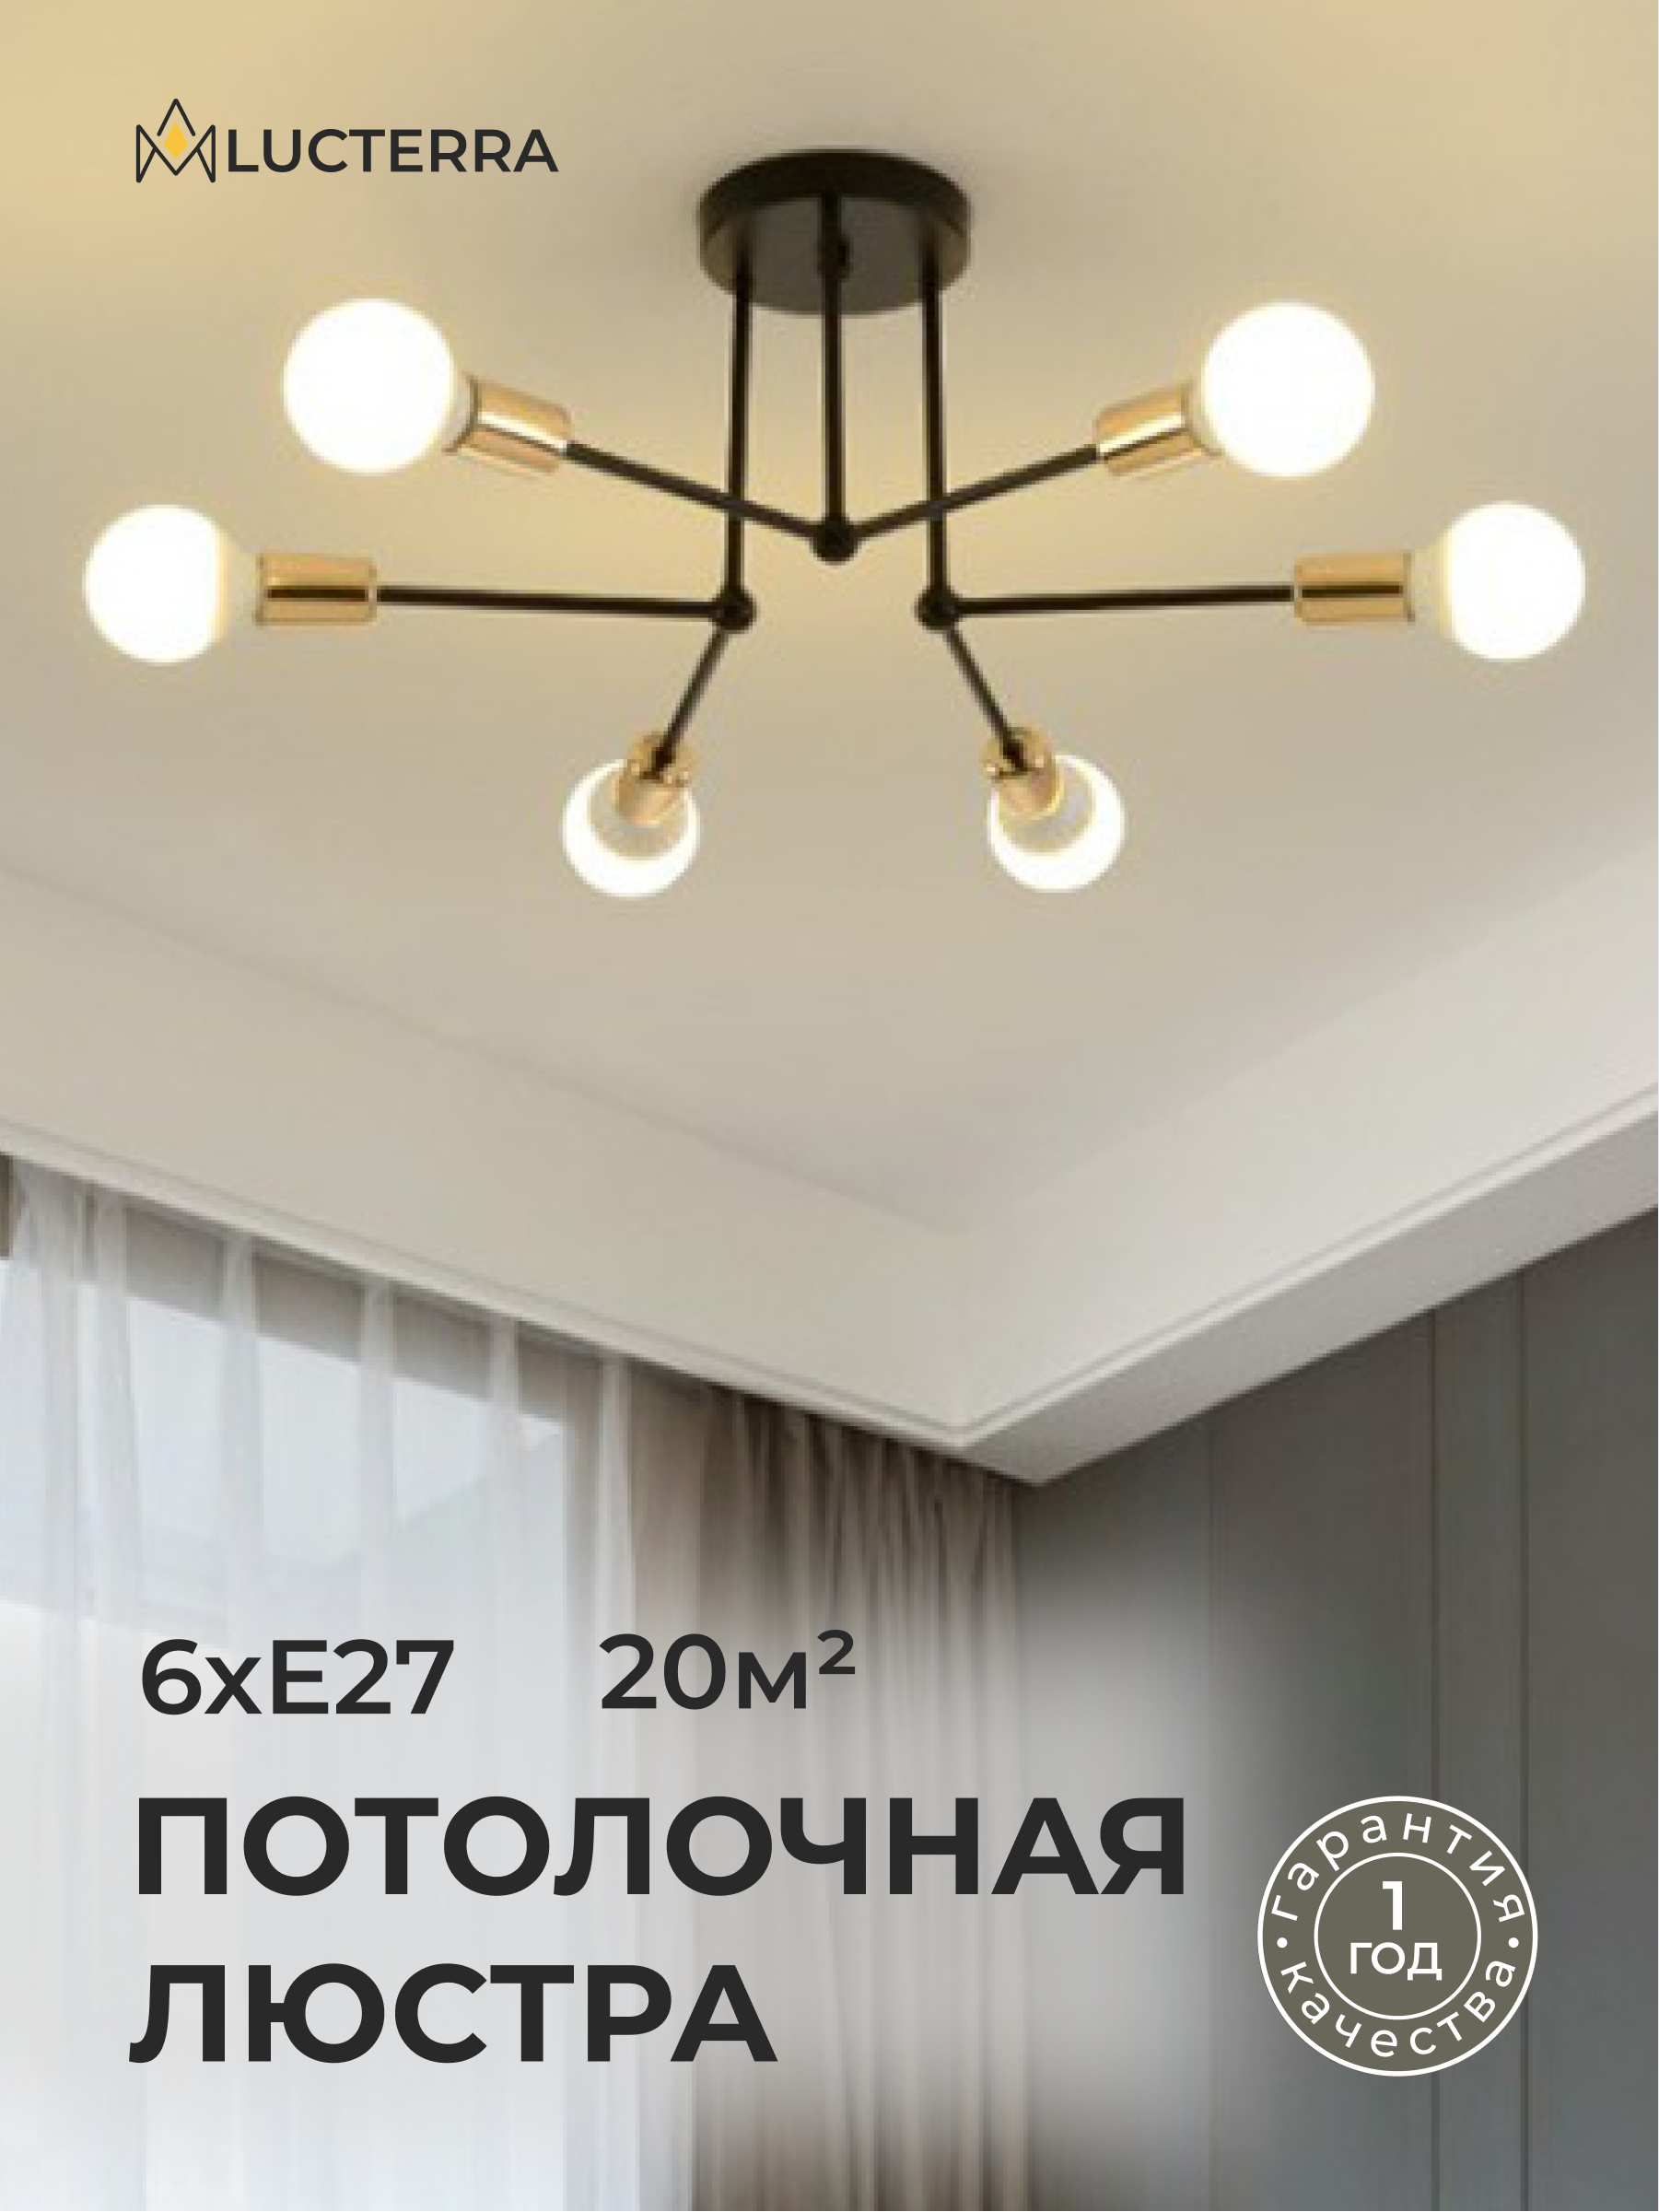 Люстры на 1 лампу в интернет магазине Мой свет ☼ | Украина